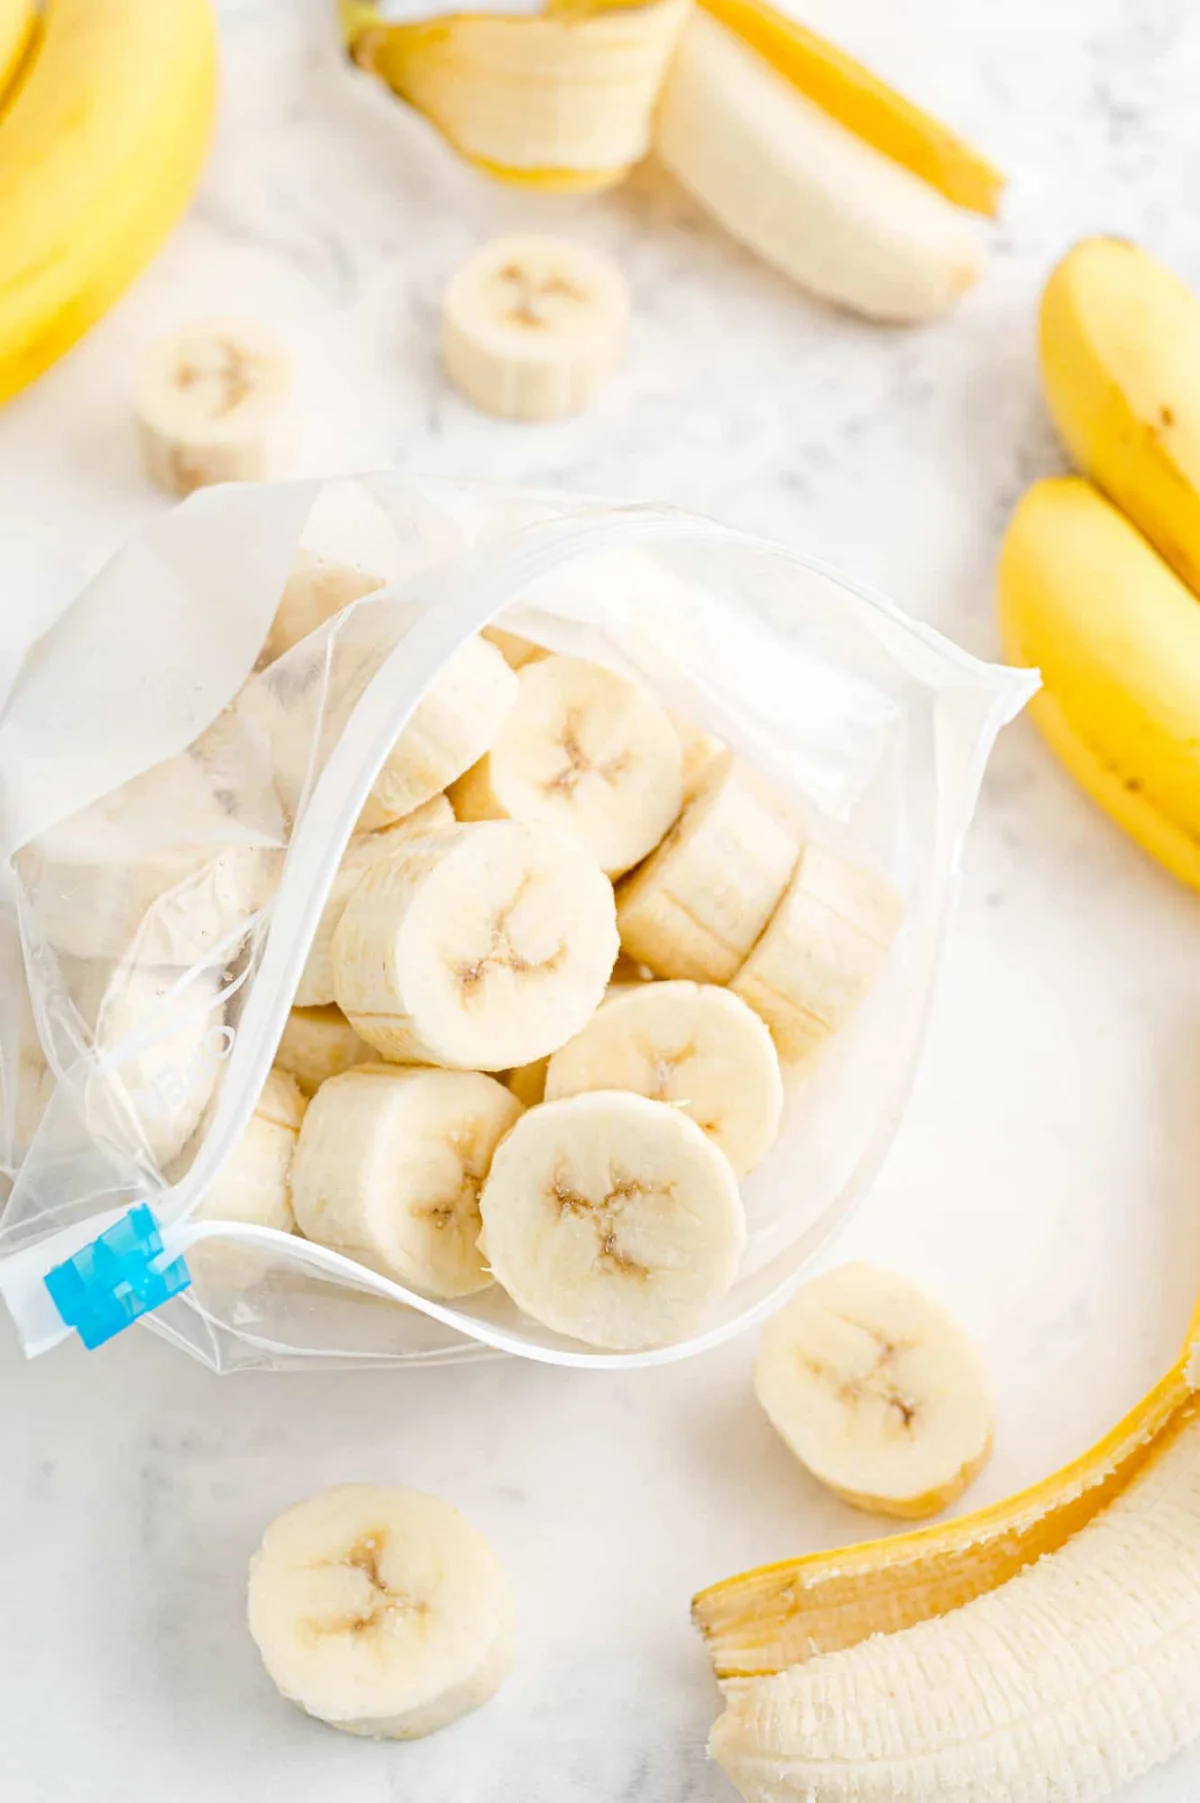 in stuecke geschnittene banane im zip plastikbeutel